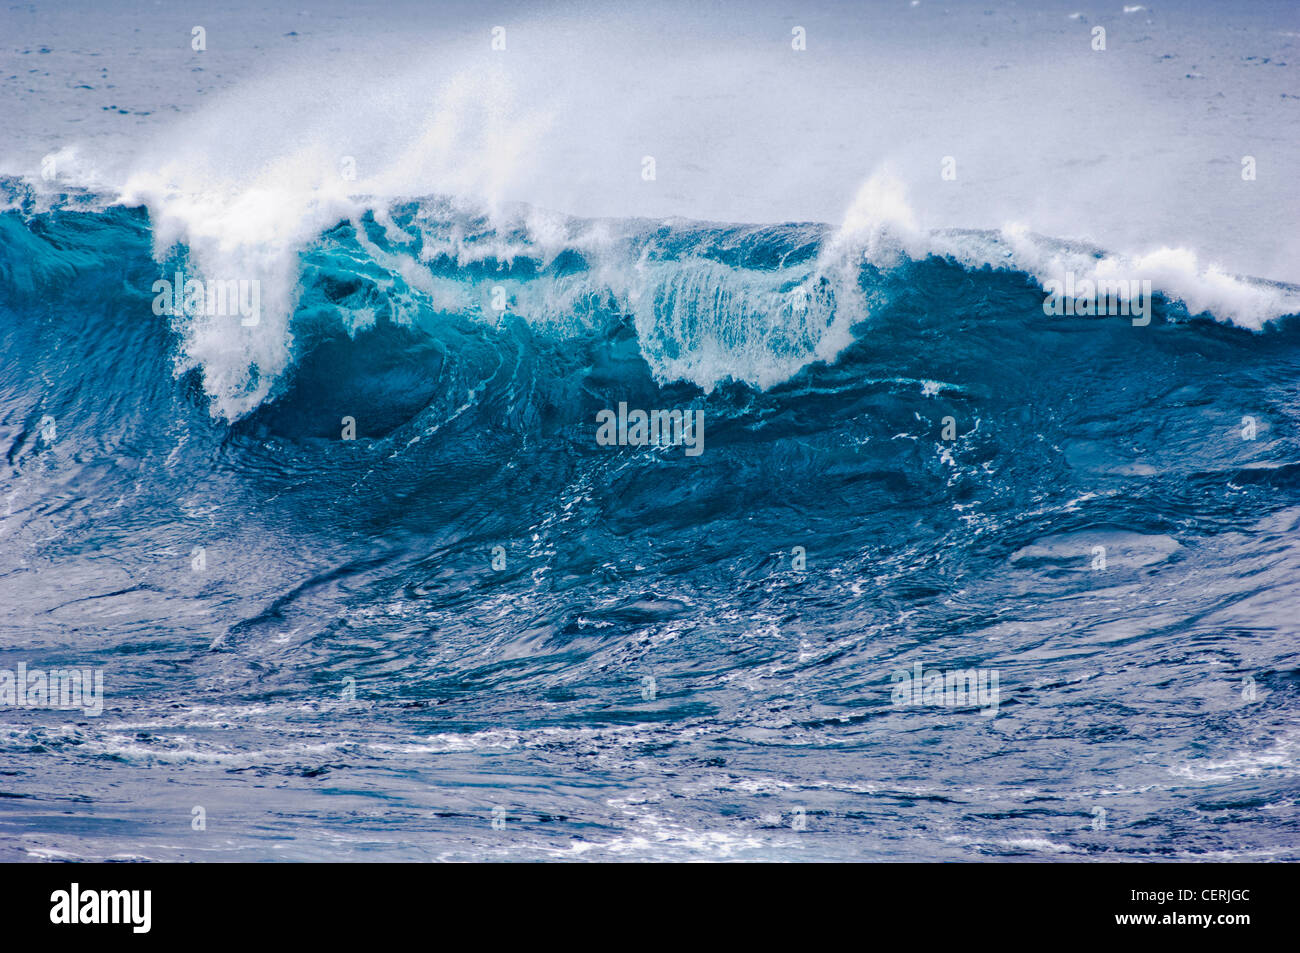 Crashing waves off the coast of Tenerife Stock Photo